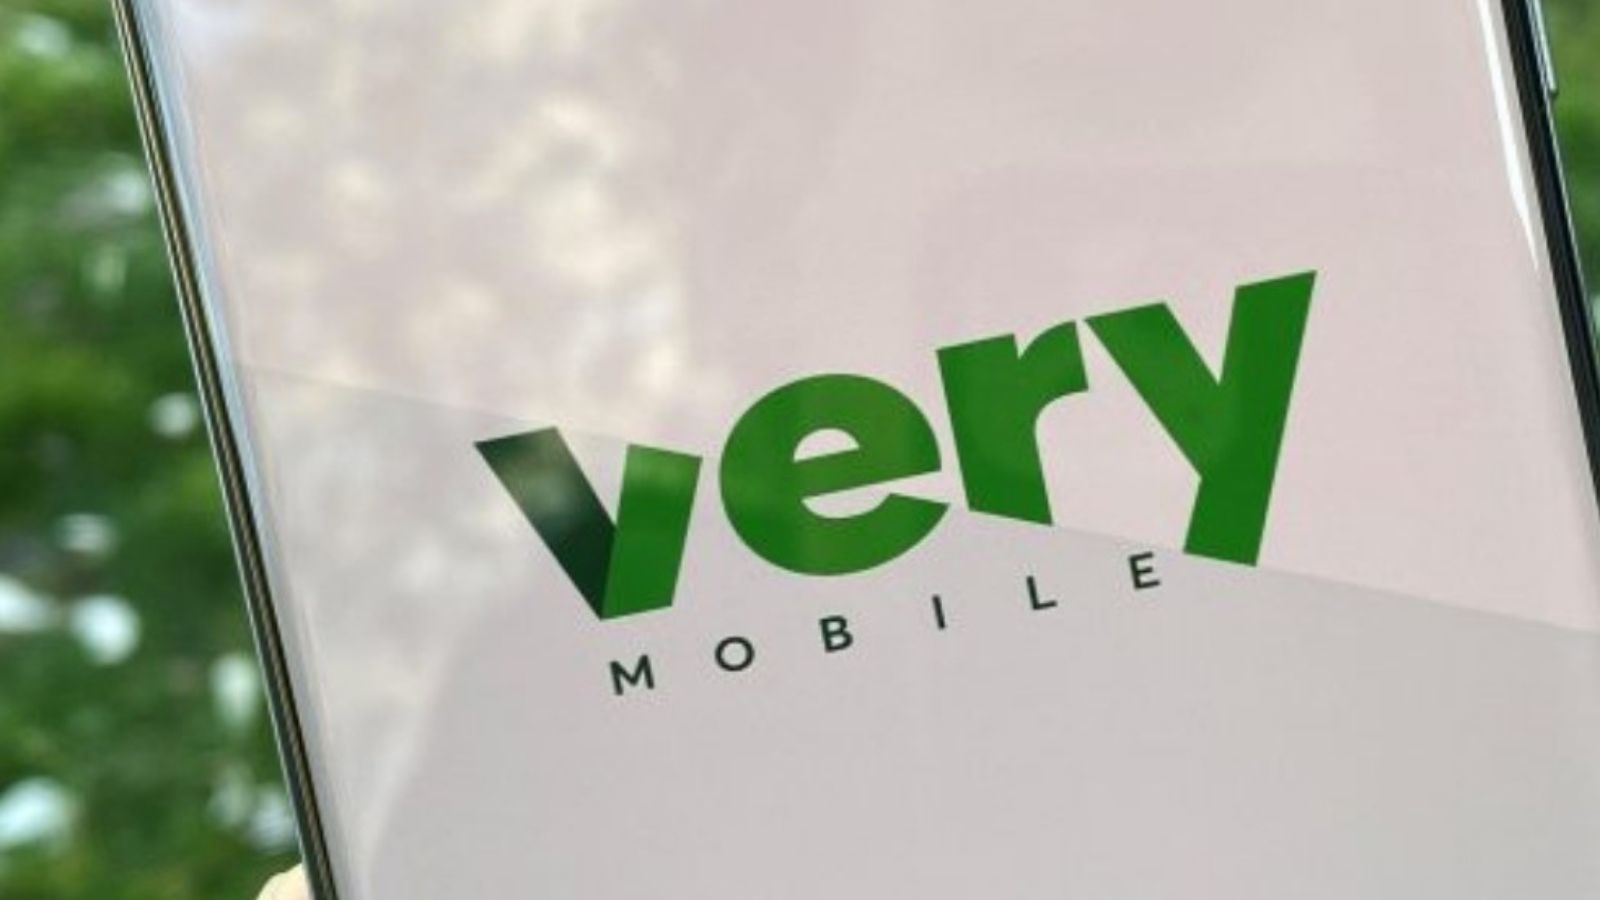 Very Mobile ha l'offerta shock che distrugge Vodafone